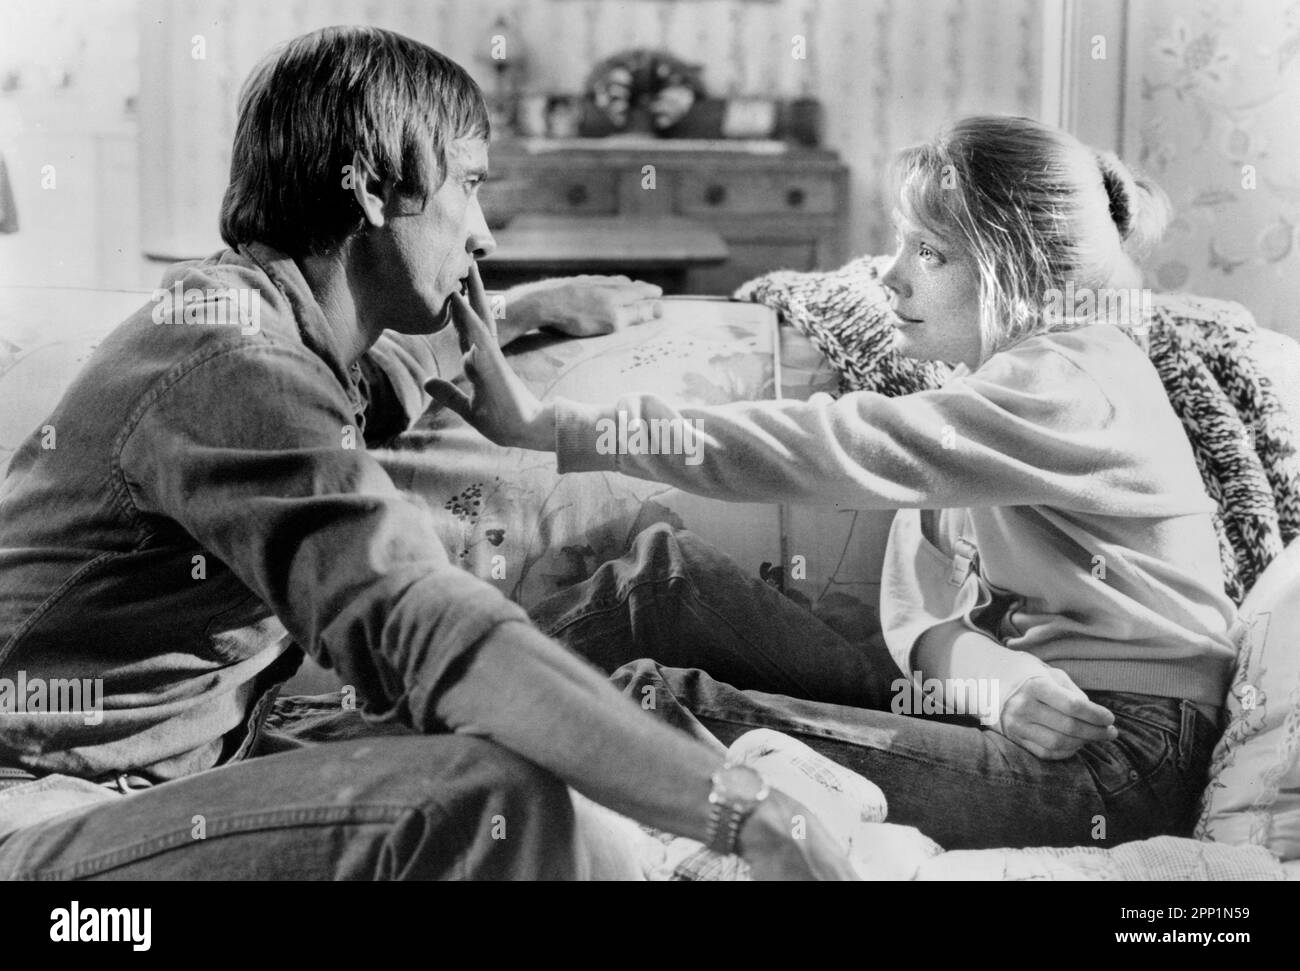 Scott Glenn, Sissy Spacek, on-set of the Film, 'The River', Universal Pictures, 1984 Stock Photo